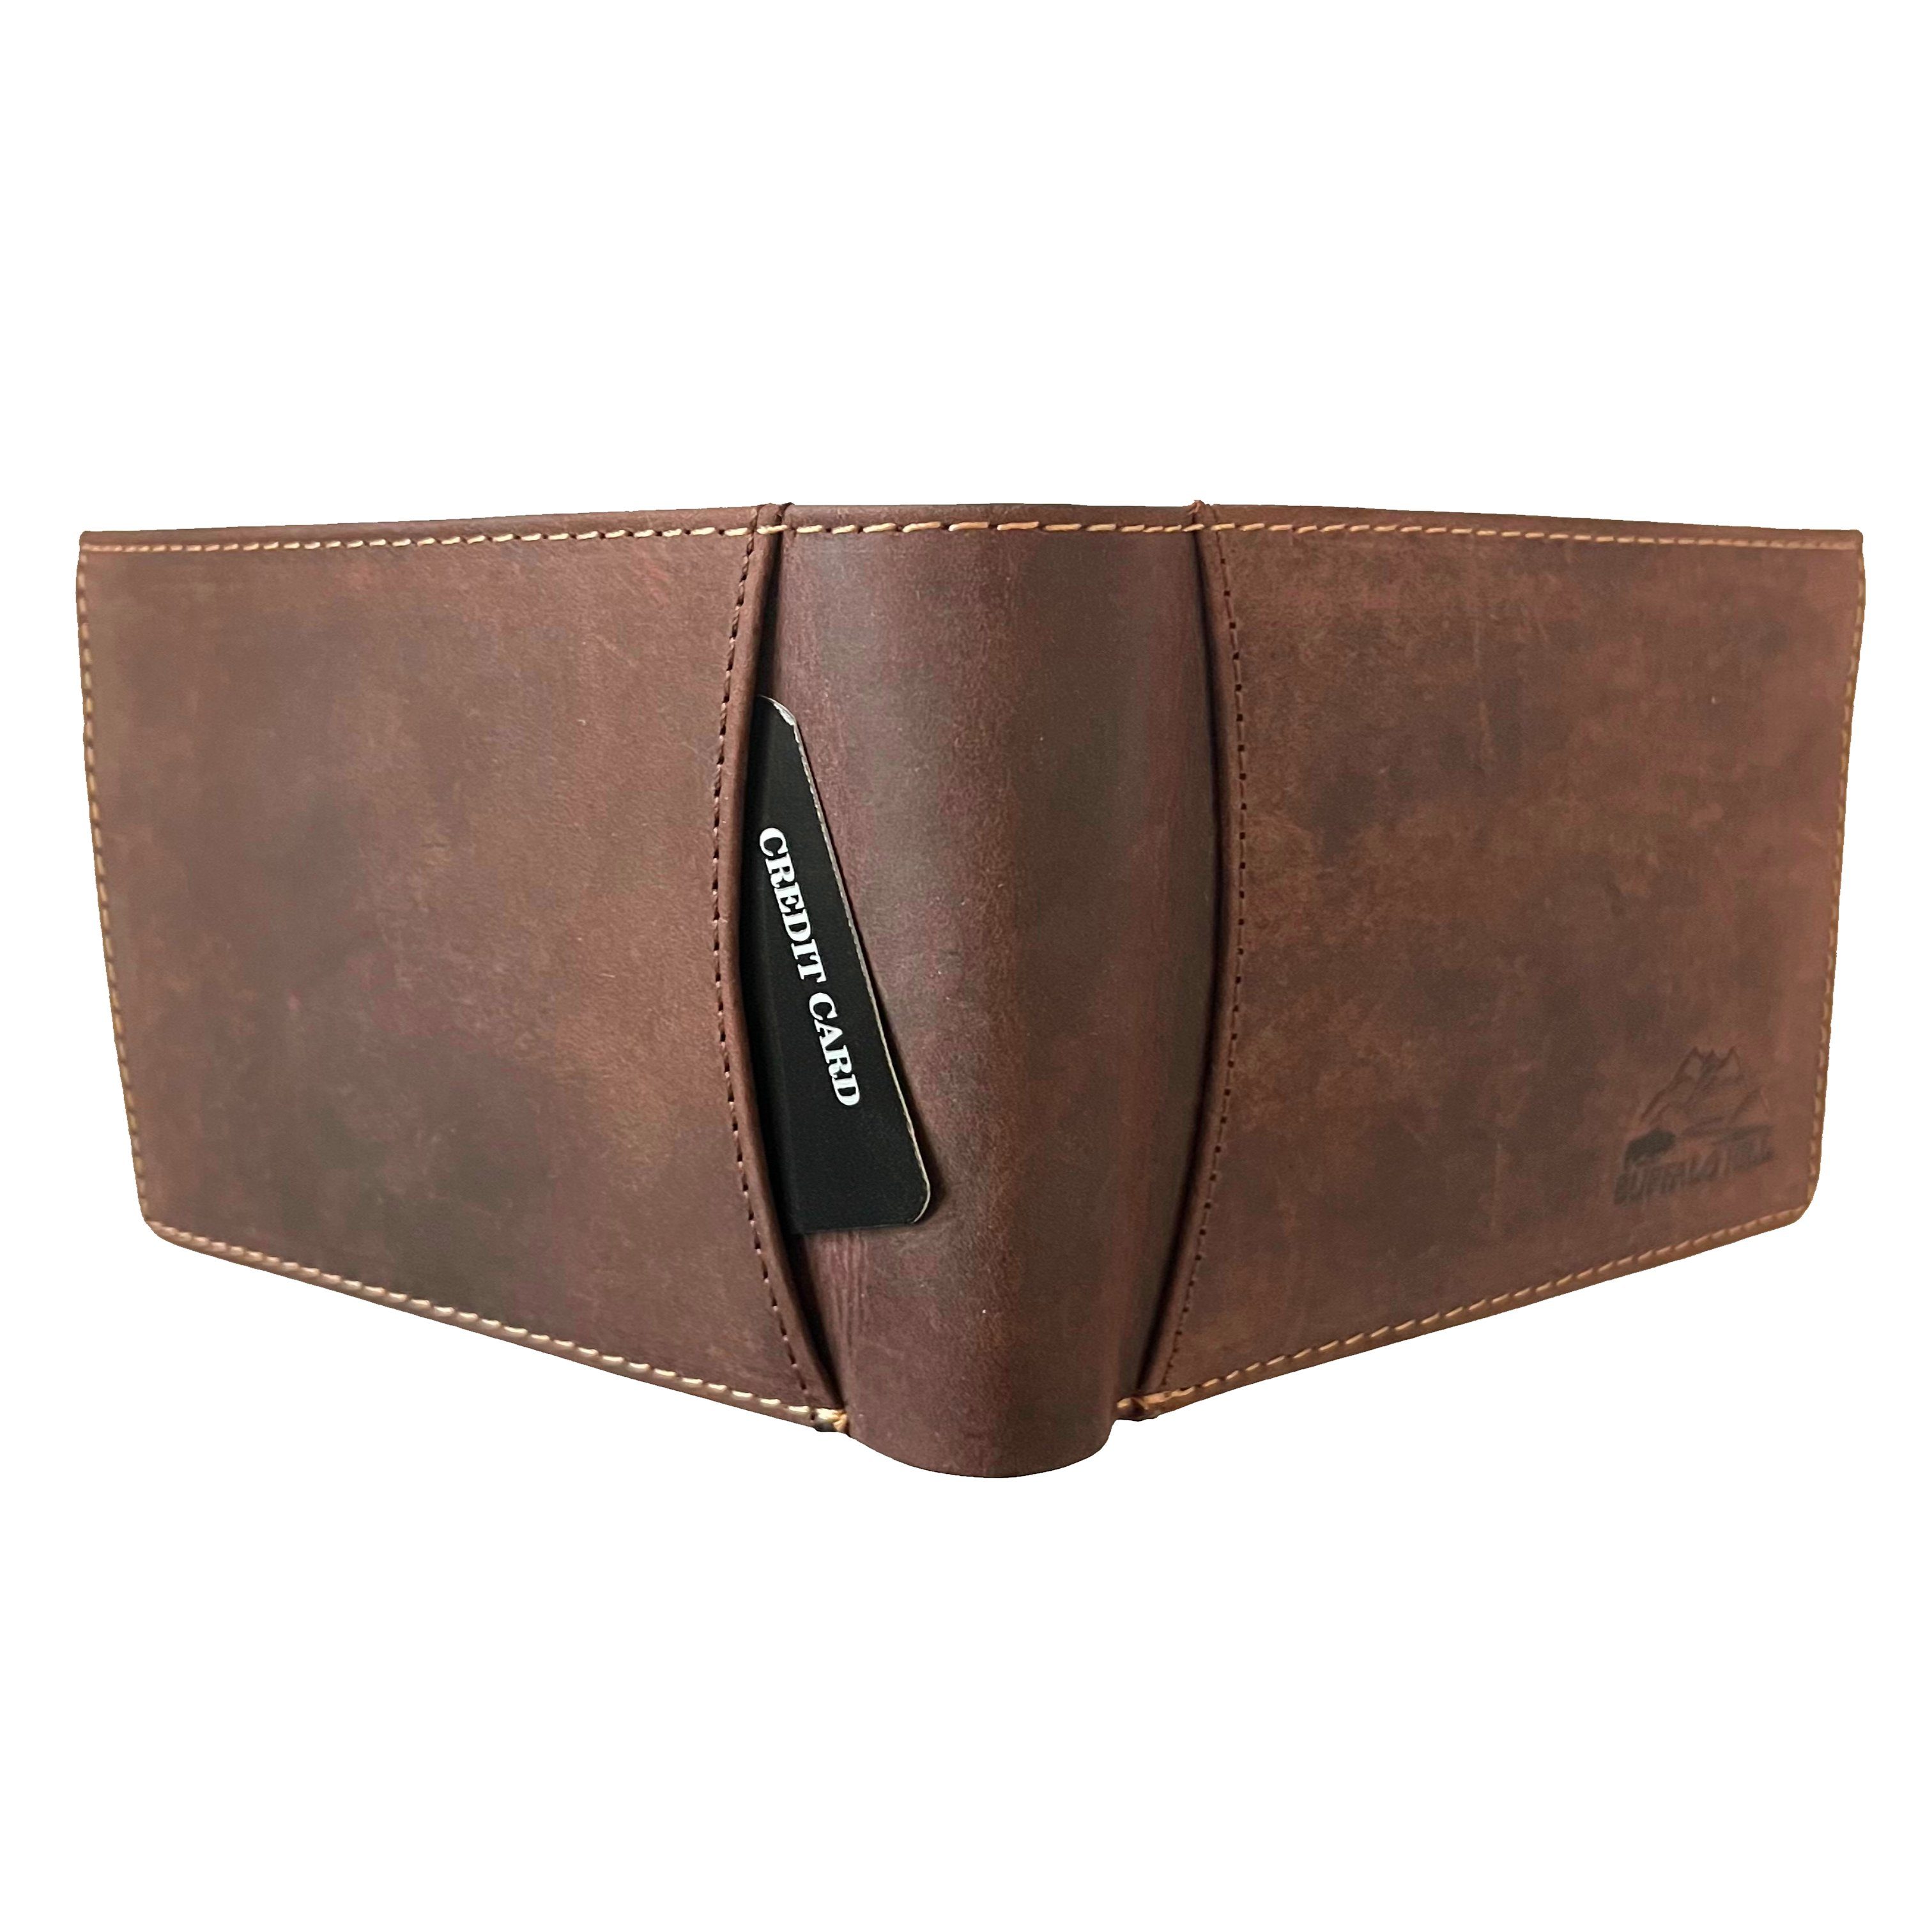 L&B Geldbörse Braun integrierter elegantes Wallet Querformat Büffelleder RFID-Schutz, 8 mit im Kartenfächern Portemonnaie, in